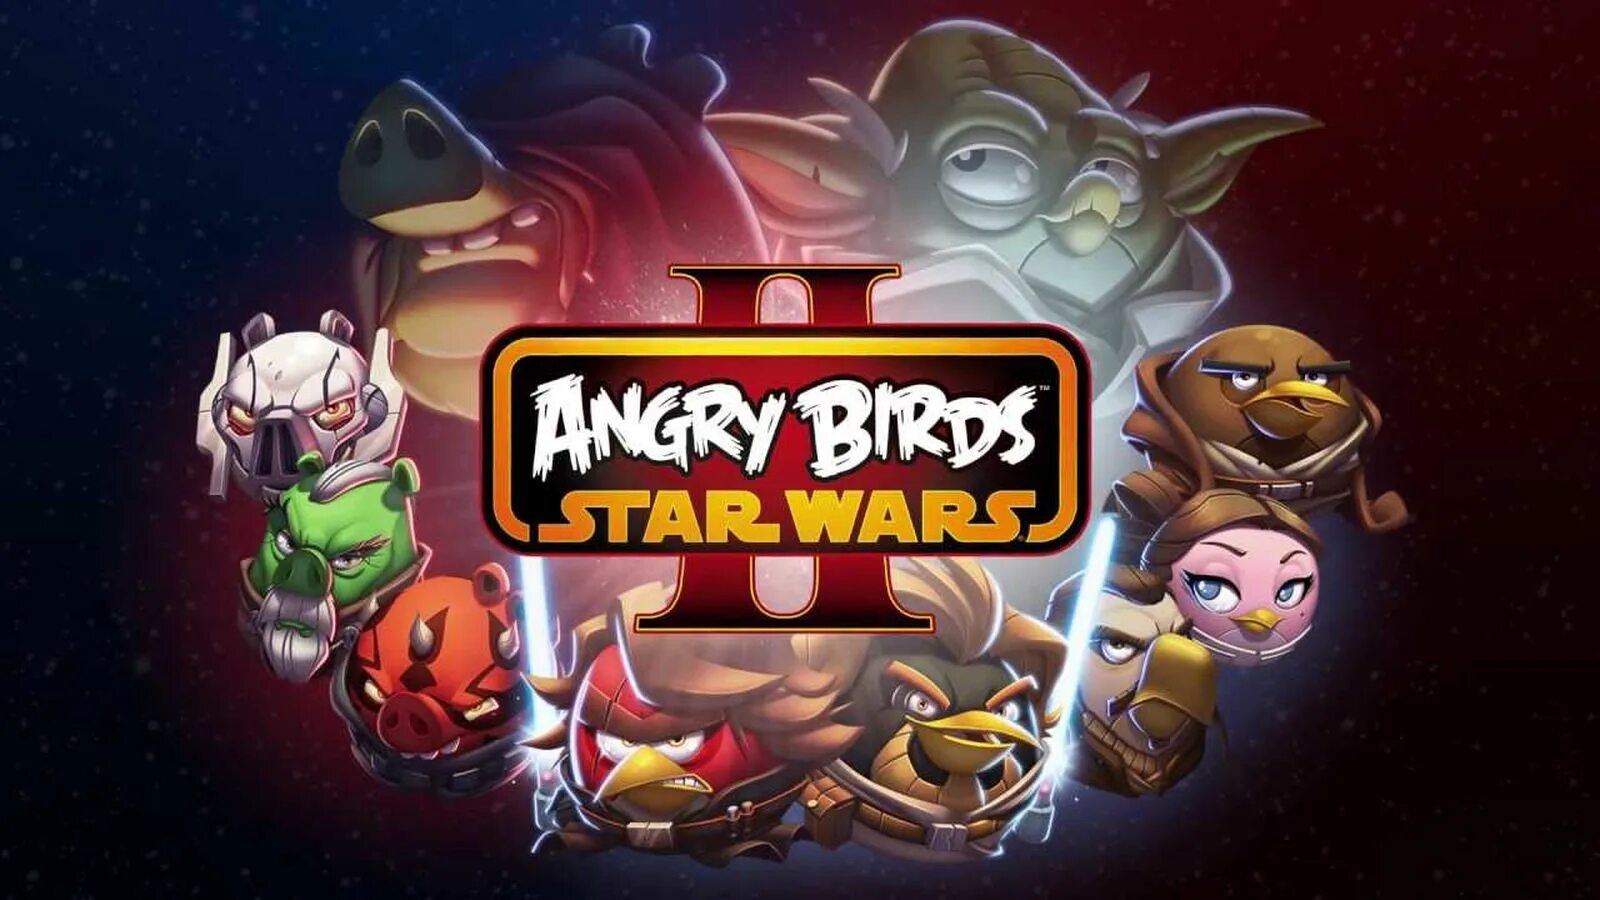 Angry birds 2 деньги. Энгрибёрдцзвёздные войны 2. Игра Angry Birds Star Wars 3. Звездные войны Энгри Бердс Стар ВАРС 2. Игра Angry Birds Star Wars 2.